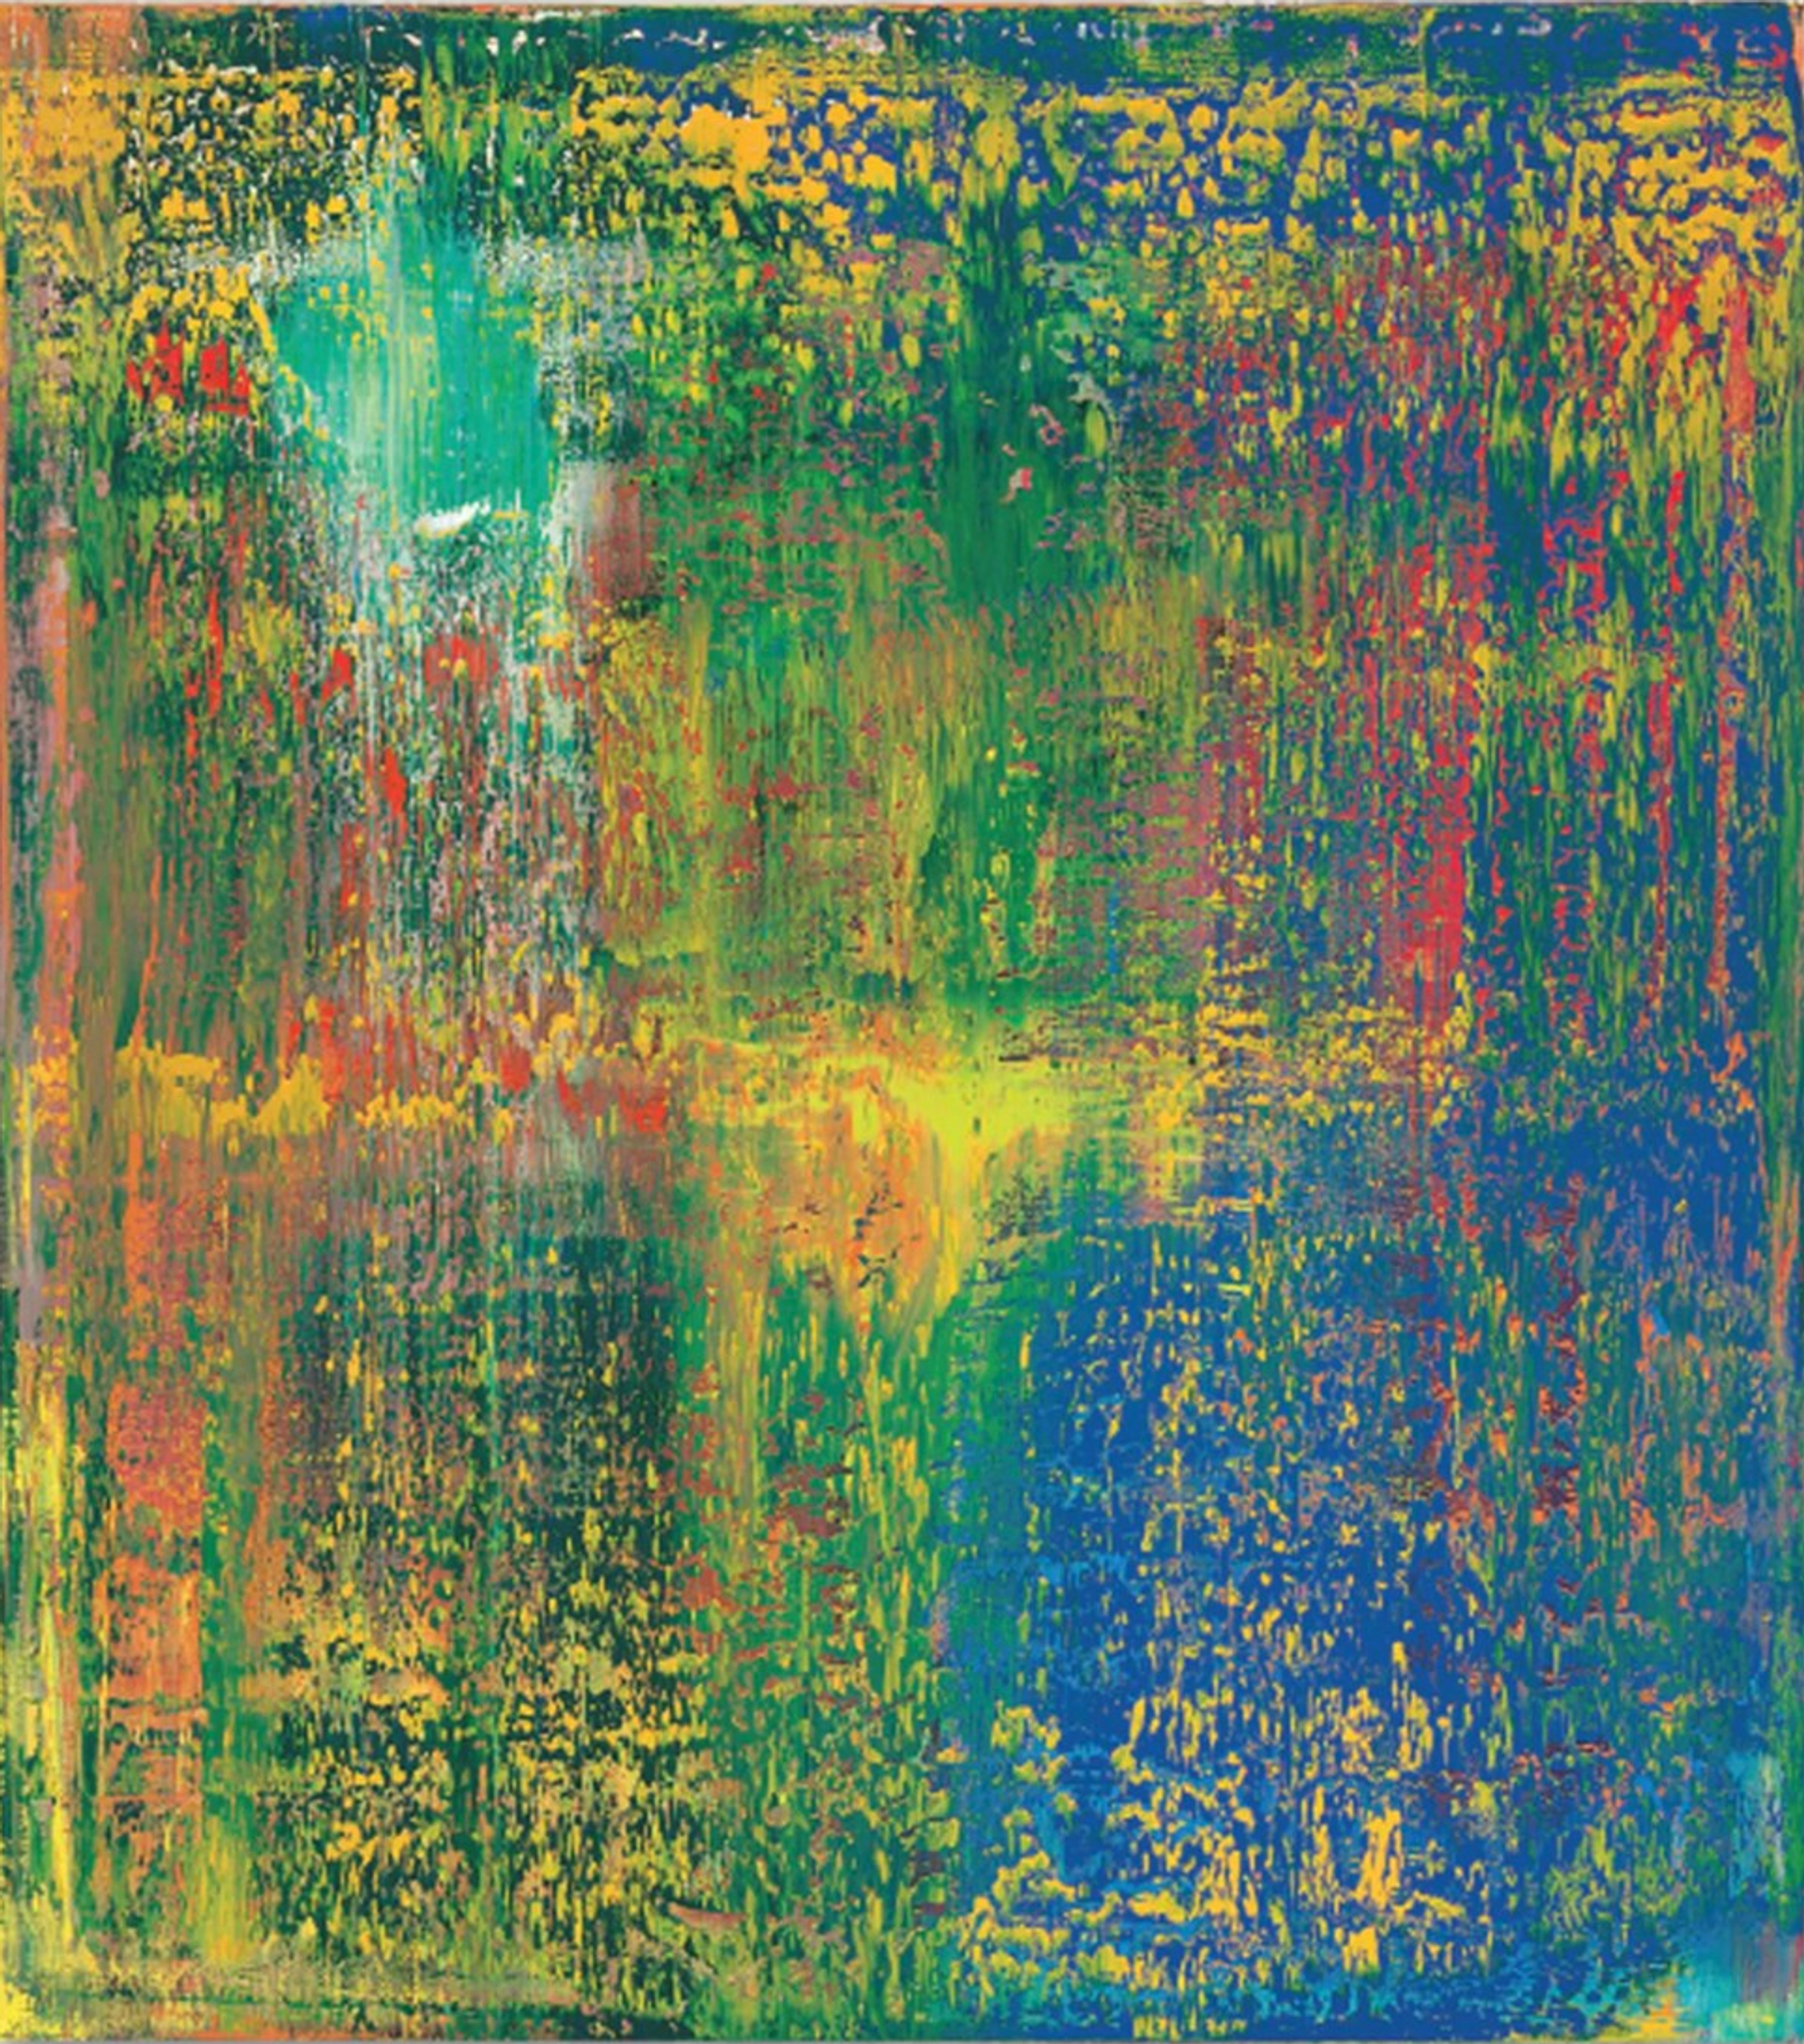 Abstraktes Bild (648-3) by Gerhard Richter